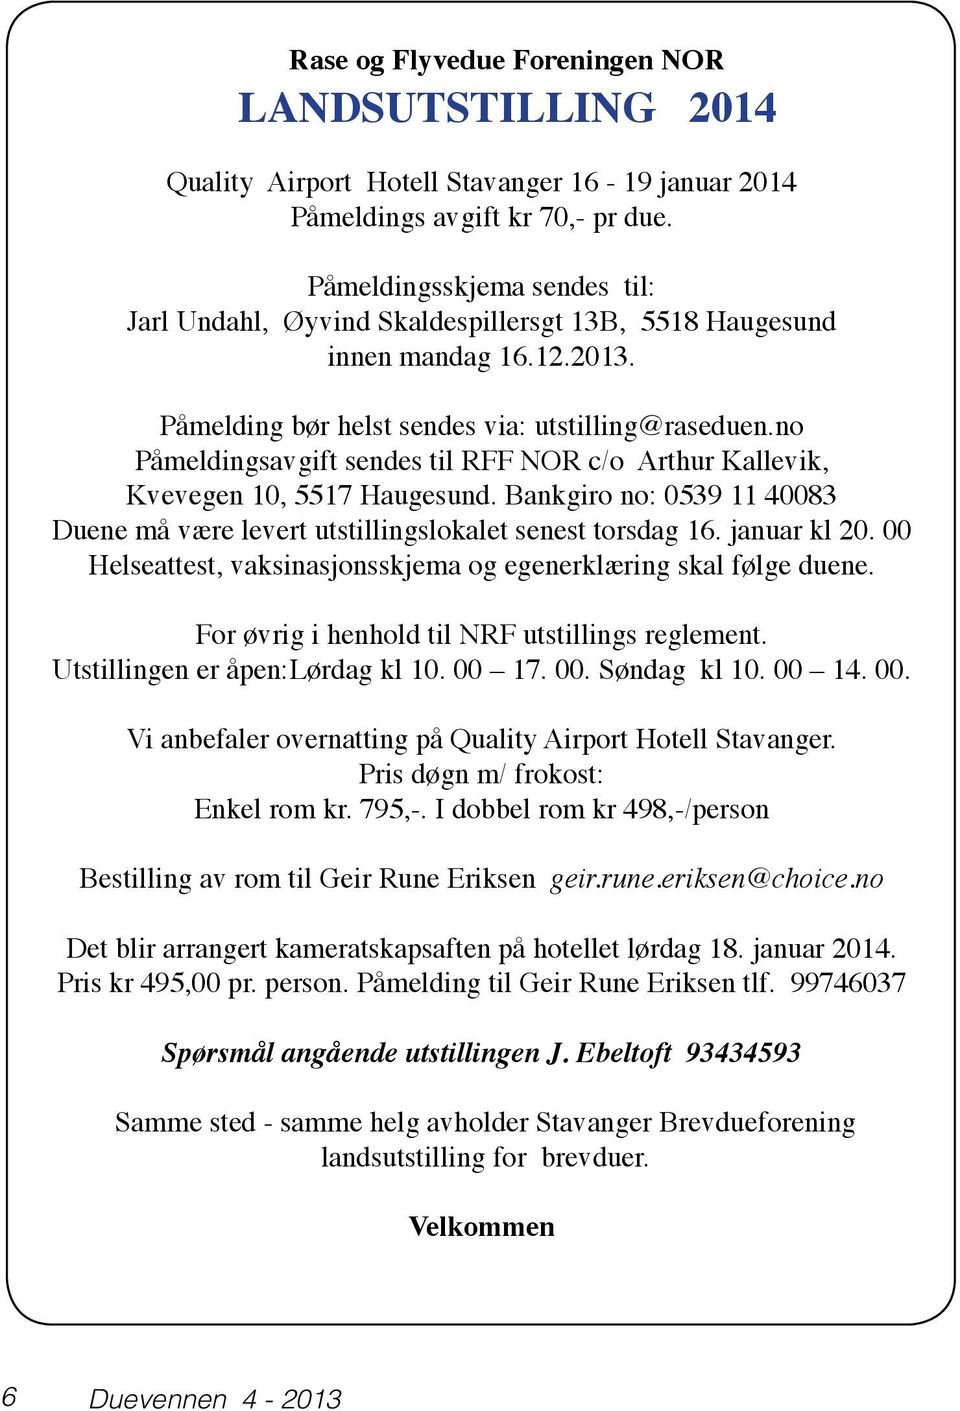 no Påmeldingsavgift sendes til RFF NOR c/o Arthur Kallevik, Kvevegen 10, 5517 Haugesund. Bankgiro no: 0539 11 40083 Duene må være levert utstillingslokalet senest torsdag 16. januar kl 20.